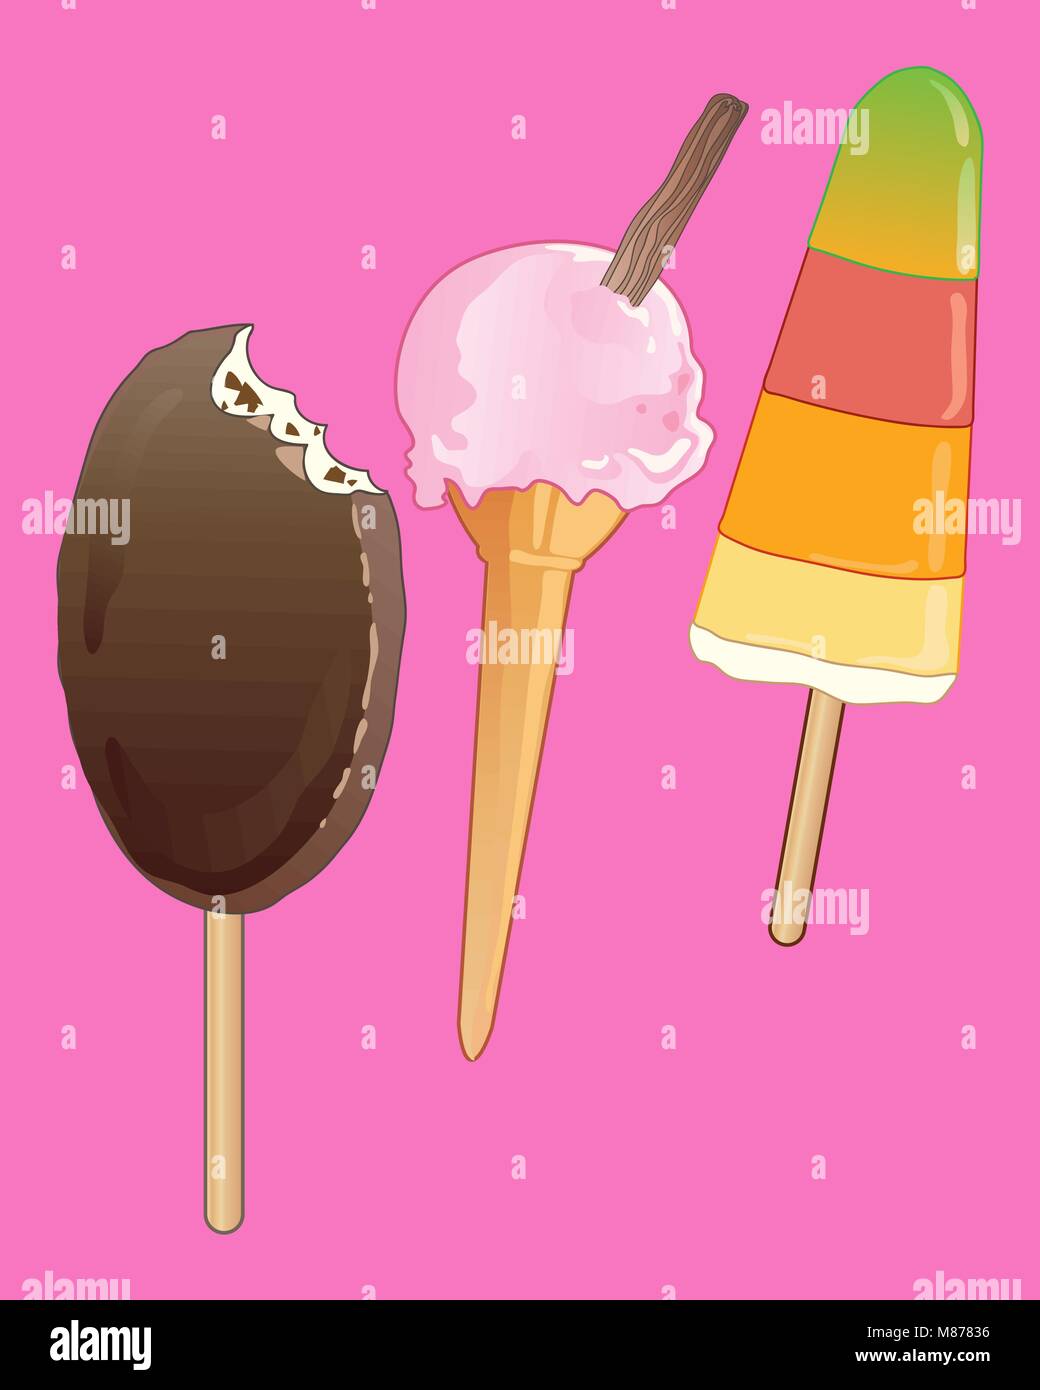 Un vecteur illustration en format eps 10 de l'été cool ice cream traite sur un fond rose vif Illustration de Vecteur